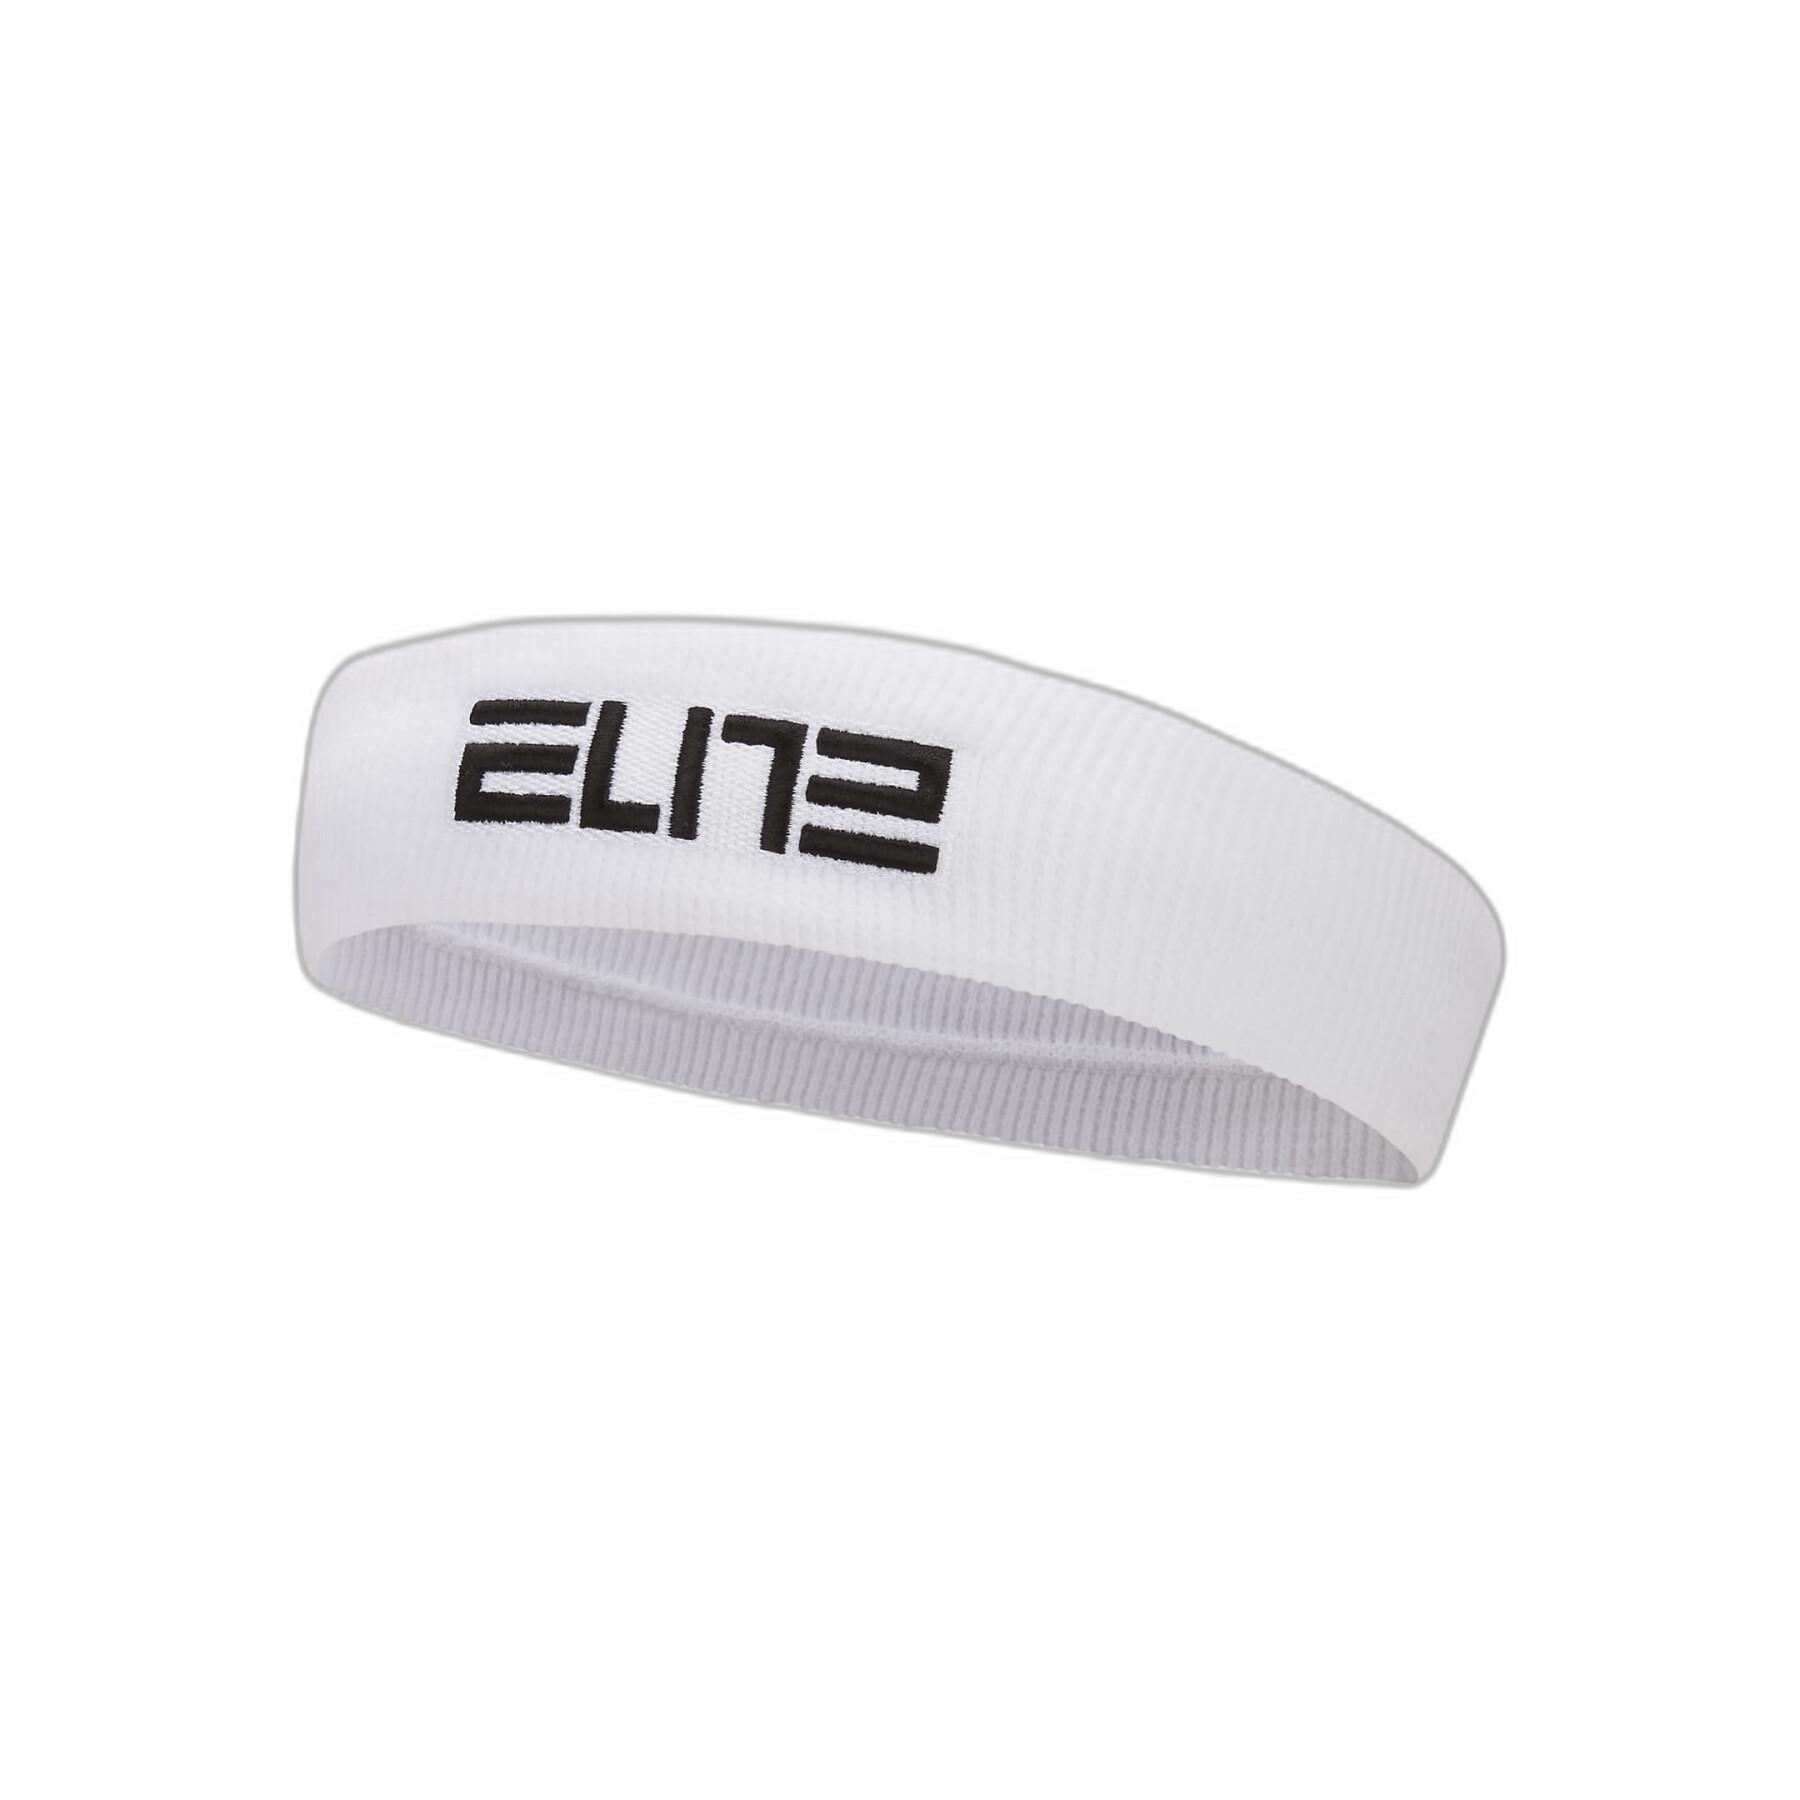 Bandeau Nike Elite - Bandeaux - Textile - Equipements